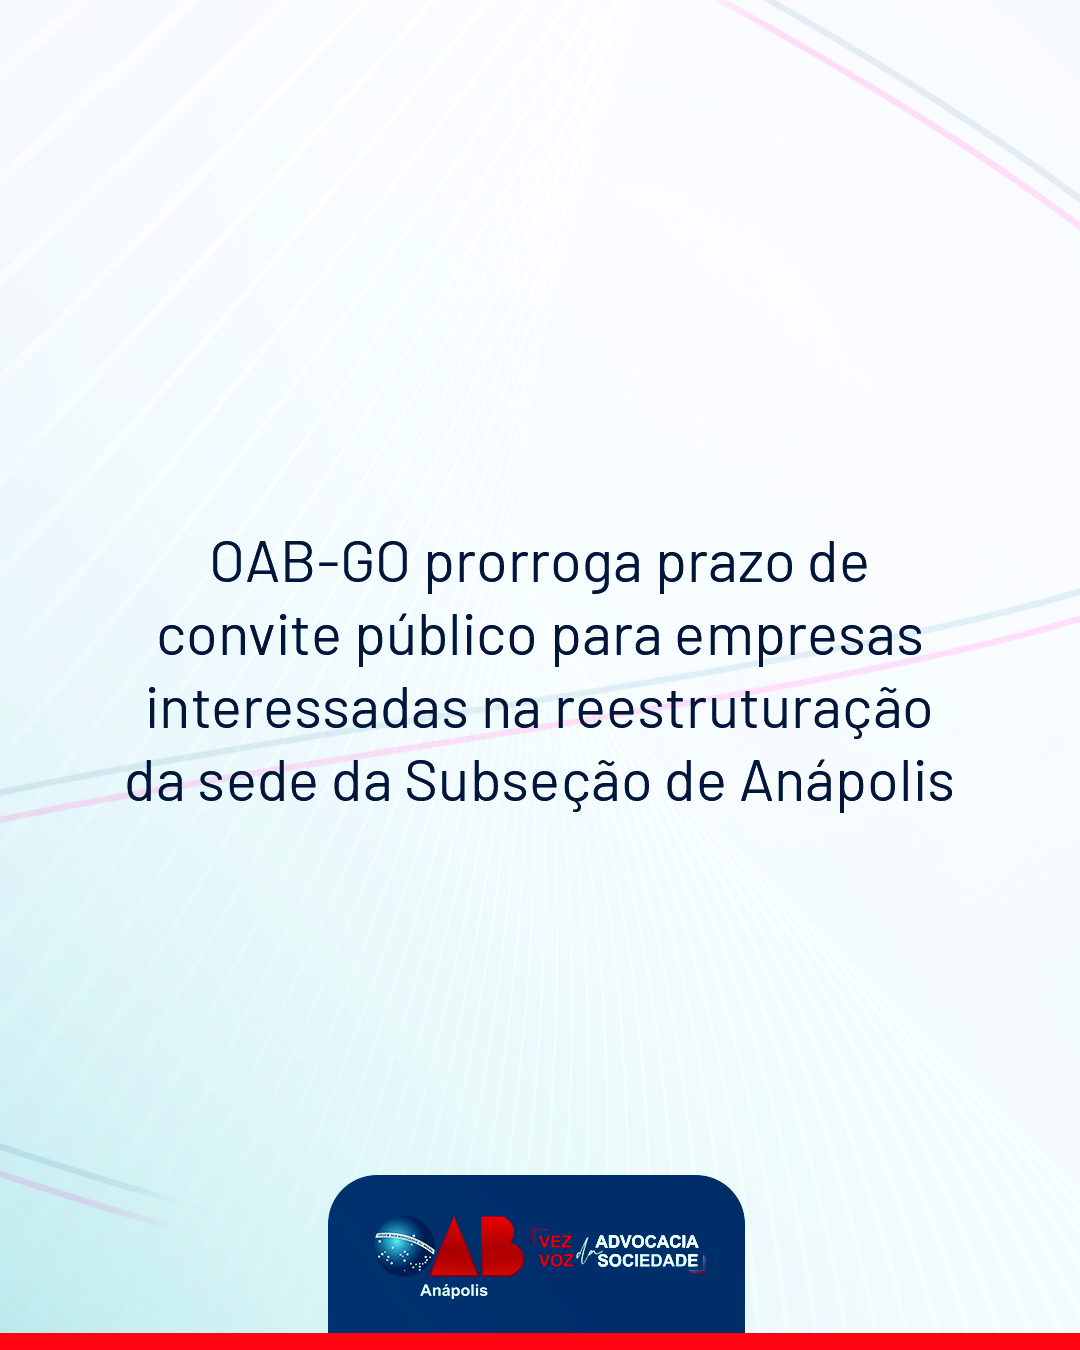 OAB-GO prorroga prazo de convite público para empresas interessadas na reestruturação da sede da Subseção de Anápolis